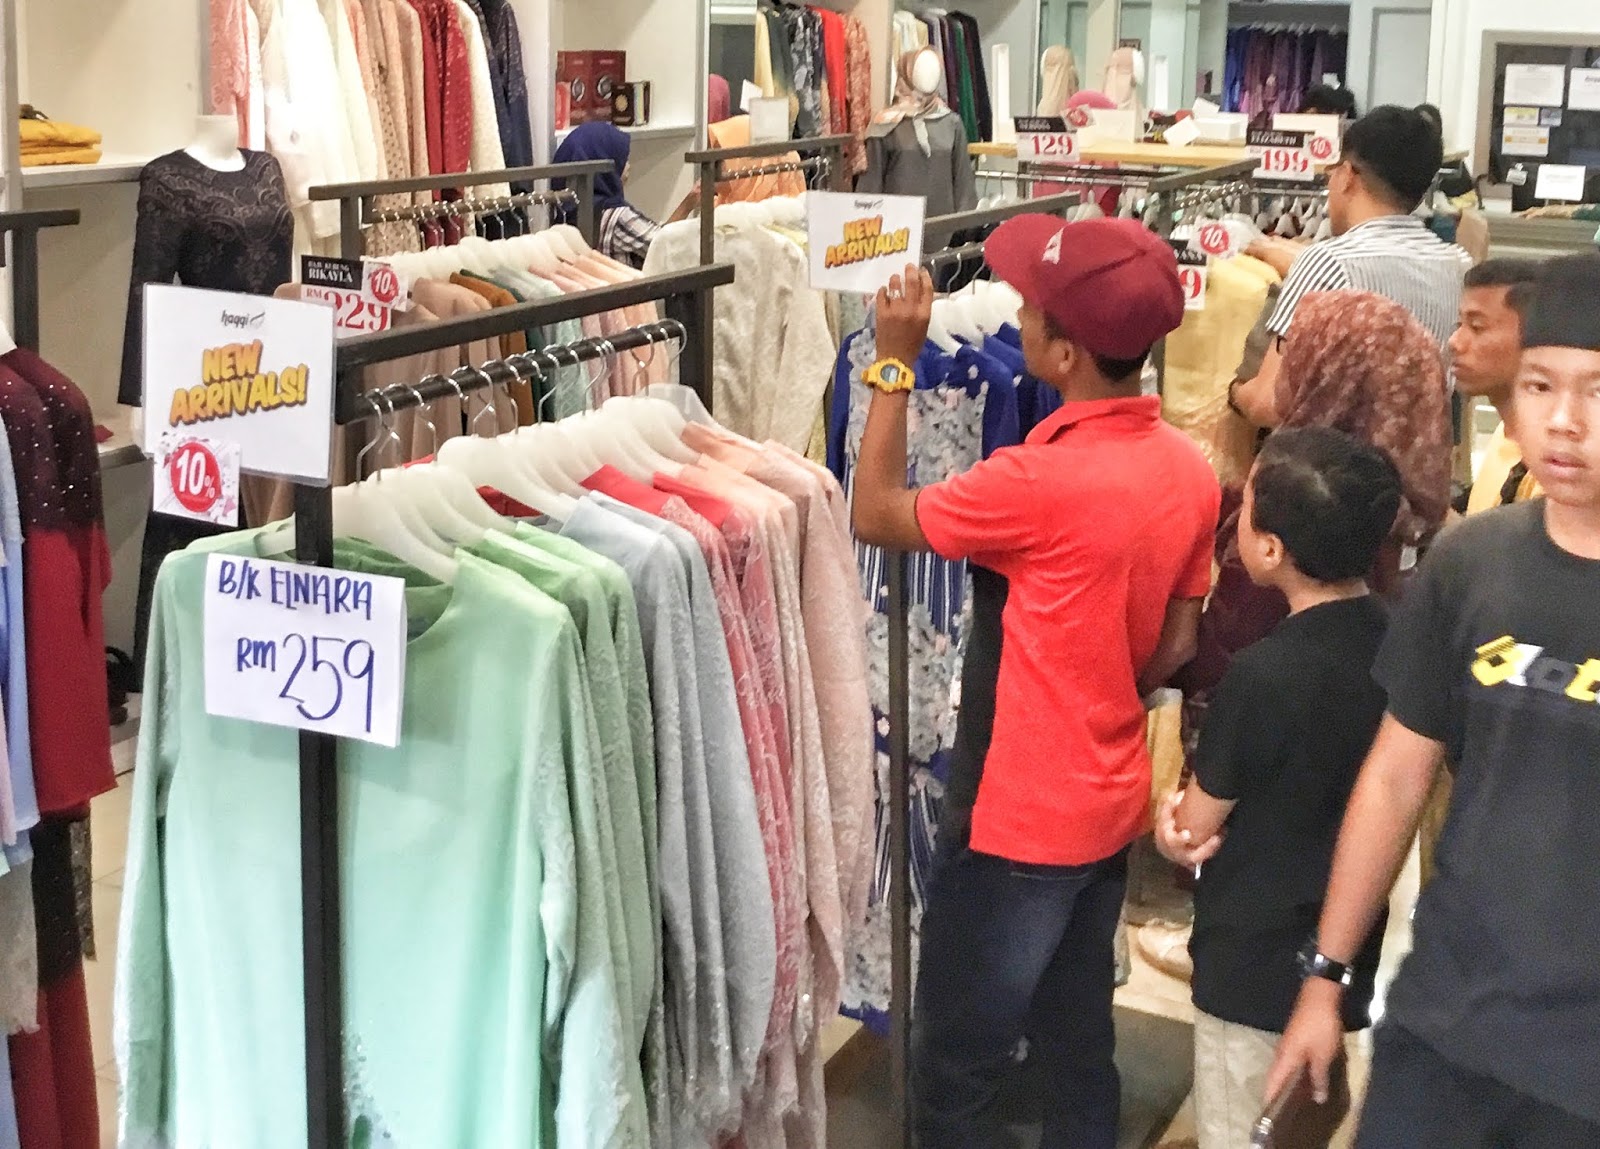 Nama Butik Di Shah Alam / Shopping Baju Raya Di Butik Haqqi Shah Alam